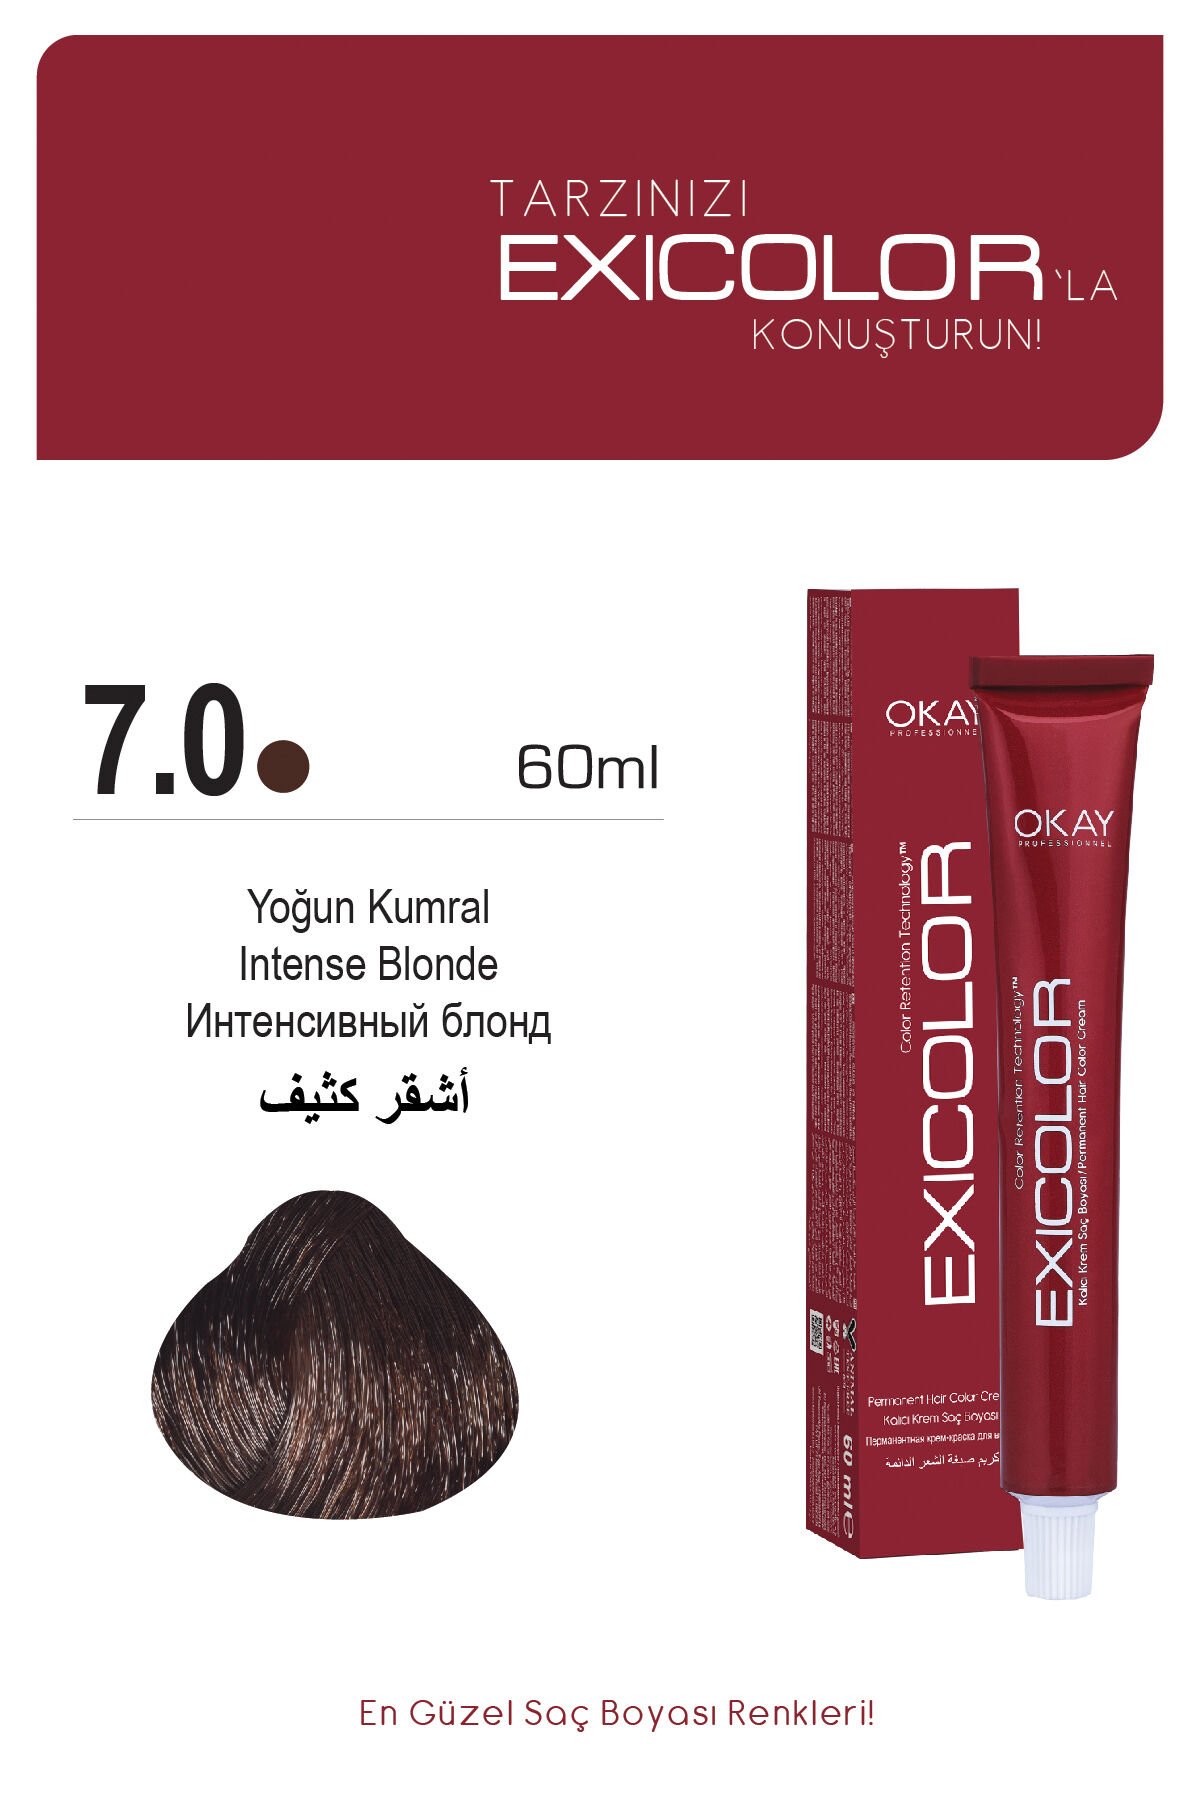 Exicolor 7.0 Yoğun Kumral - Kalıcı Krem Saç Boyası 60 ml Tüp